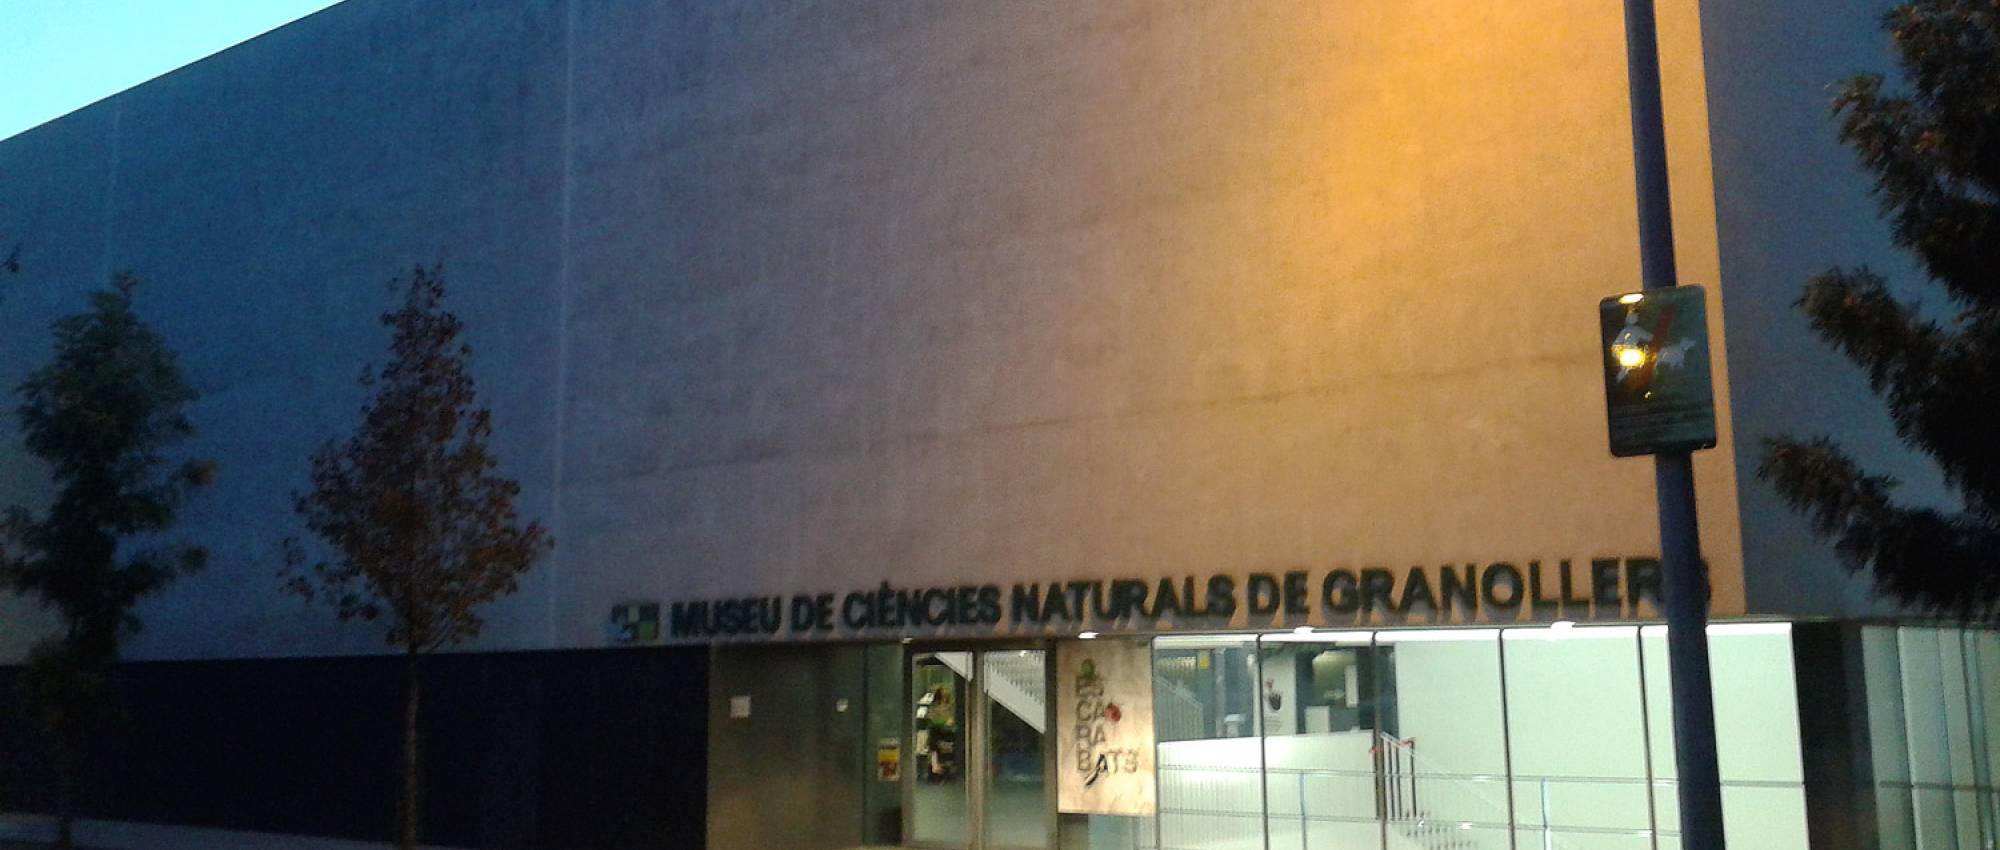 Façana del Museu de Ciències Naturals de Granollers.  CC BY-SA 4.0 - Vàngelis Villar / Wikimedia Commons